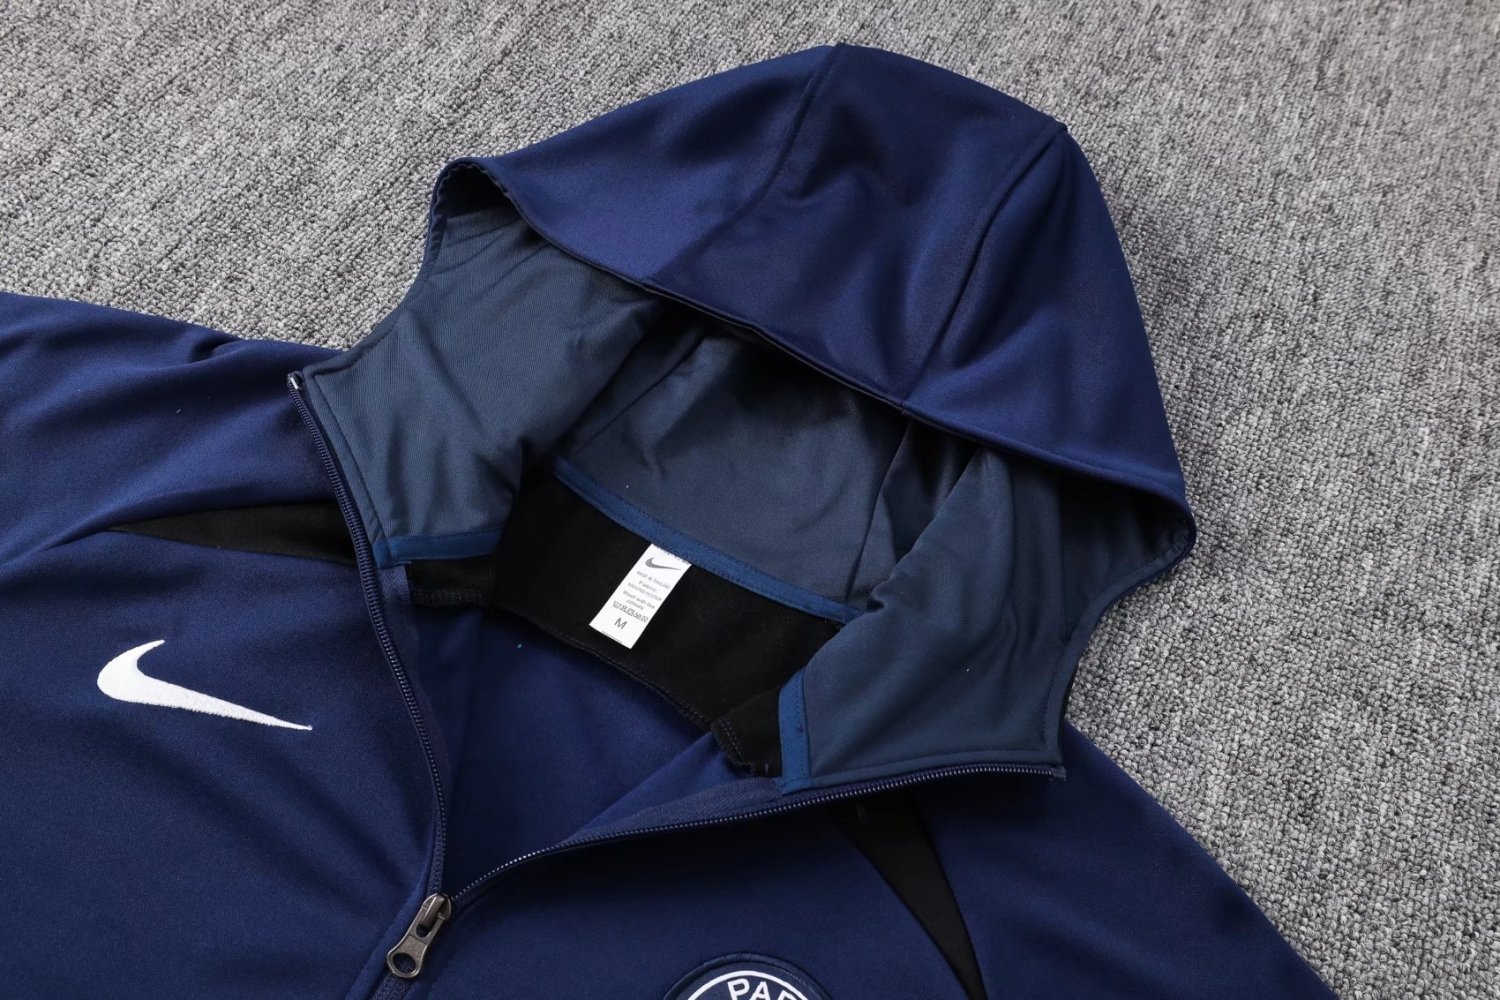 PSG Soccer Jacket + Pants Replica Navy 2022/23 Mens (Hoodie)